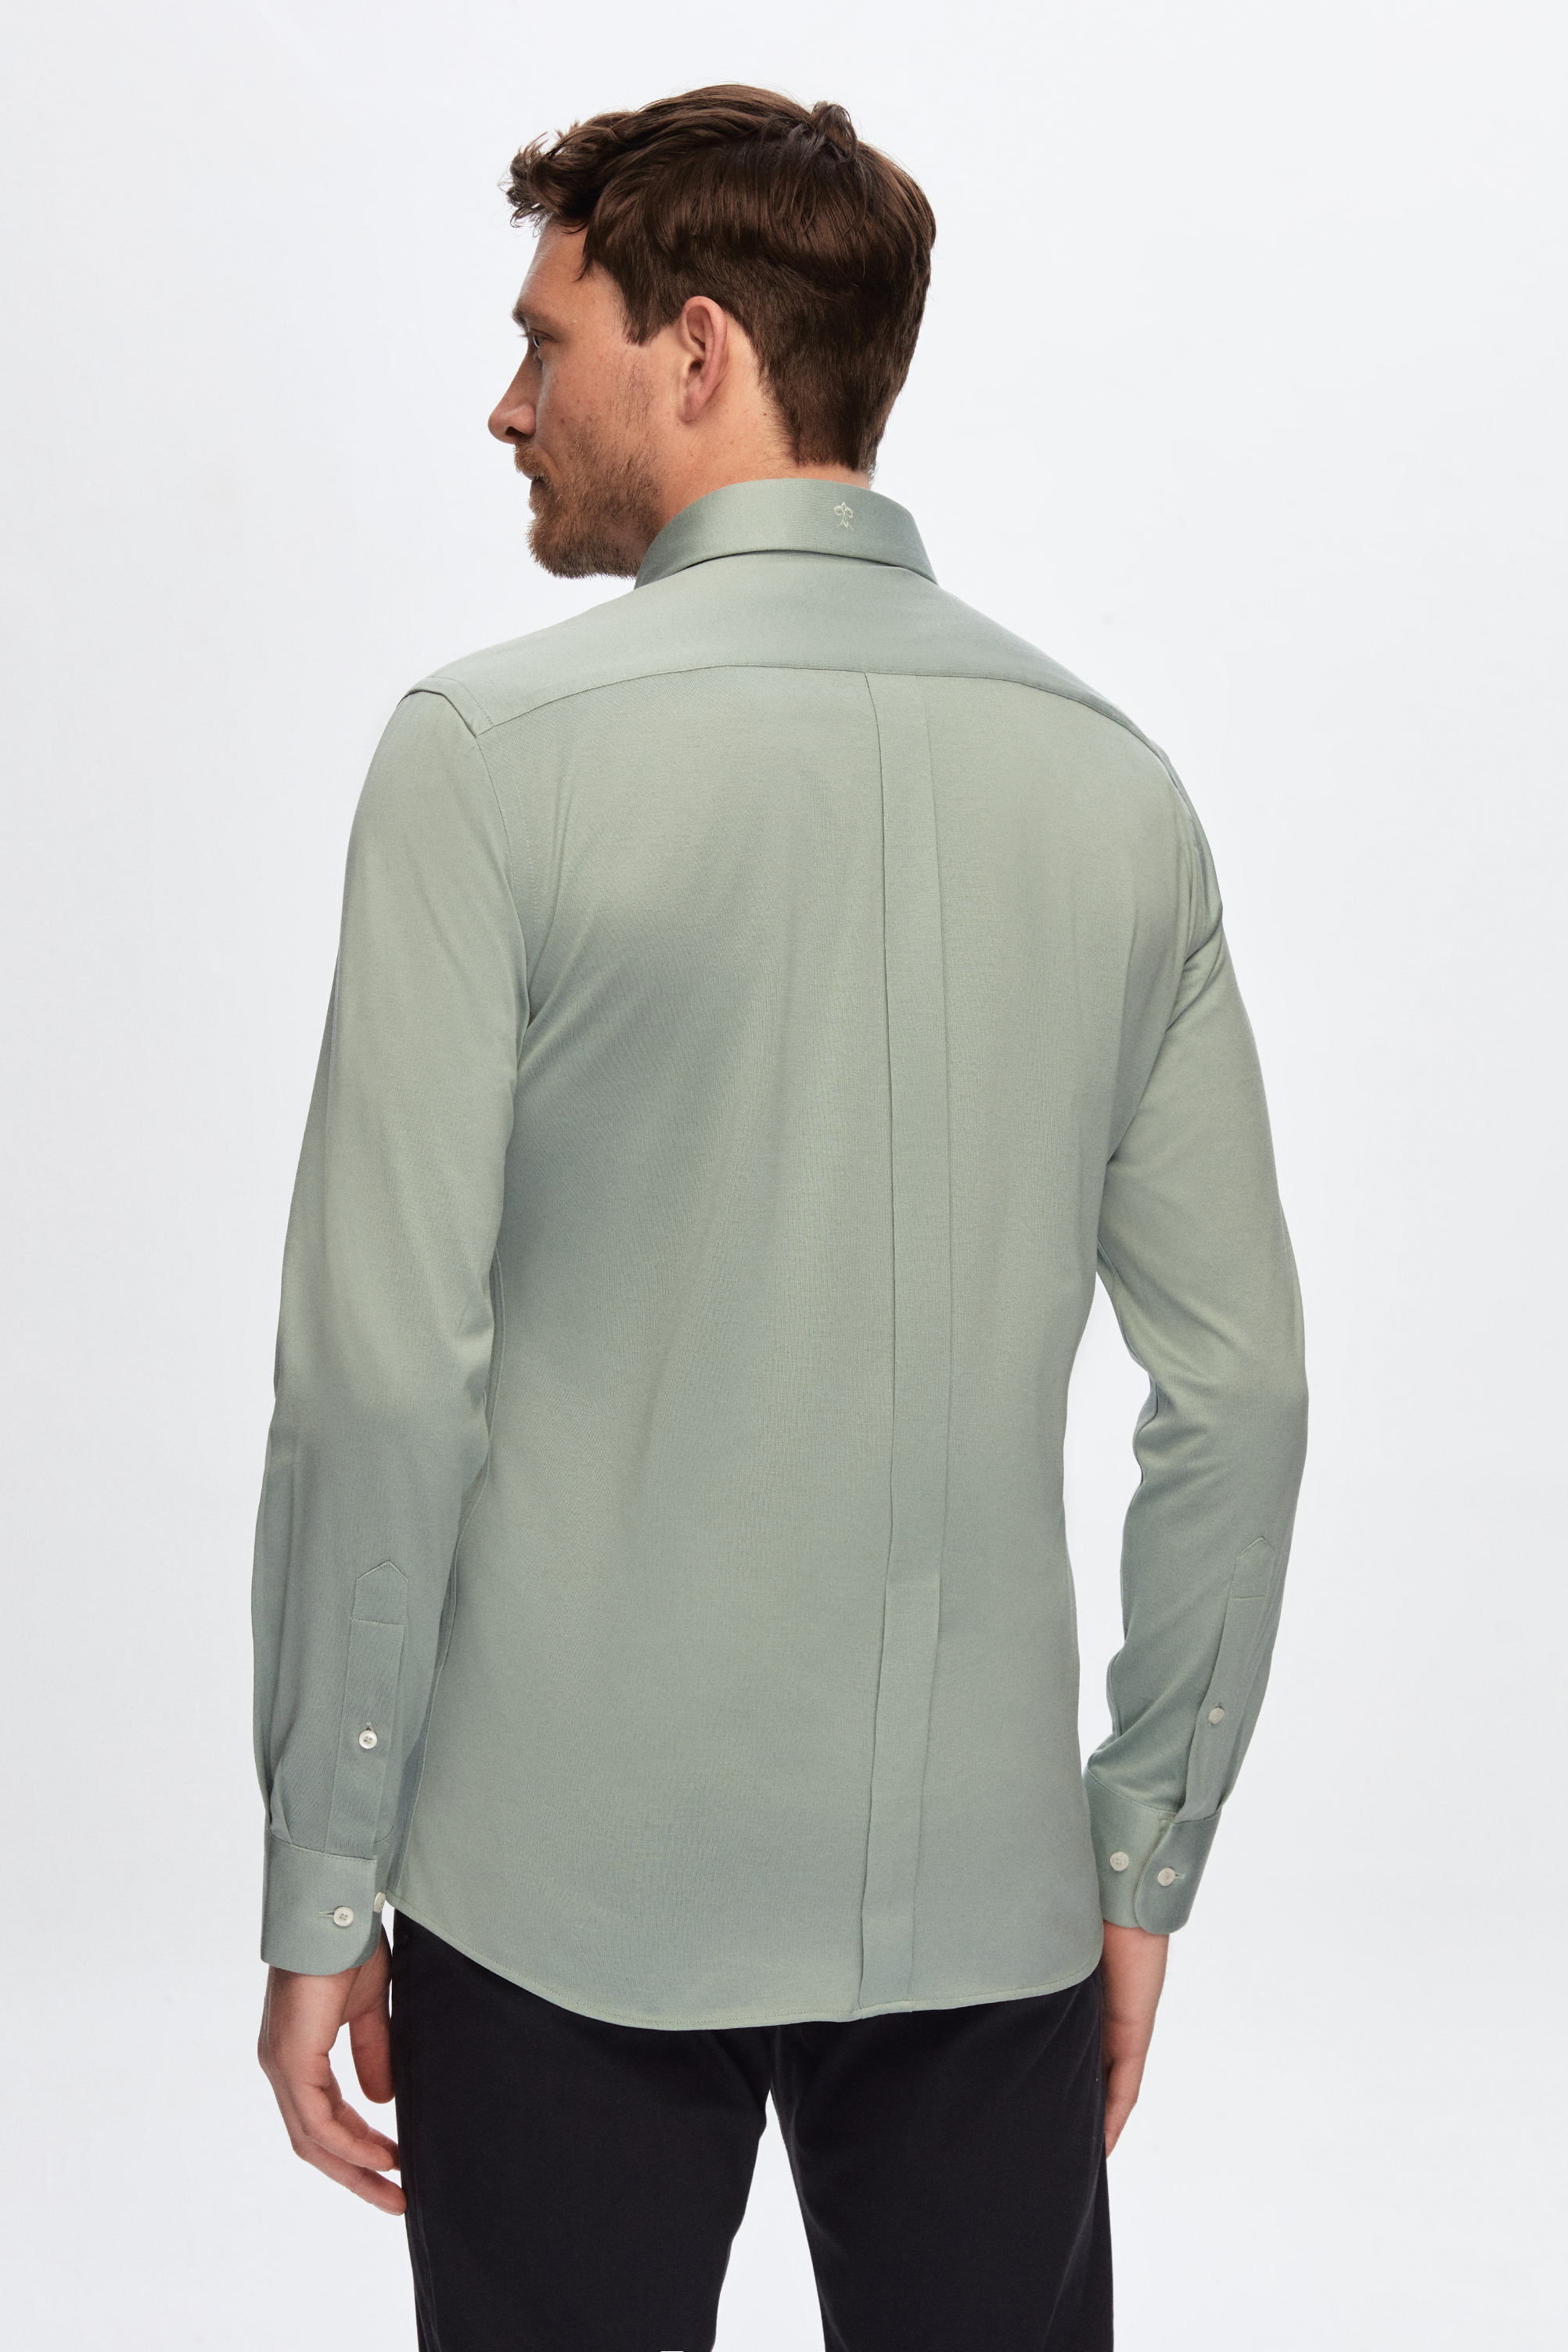 Damat Tween Damat Slim Fit Yeşil Düz %100 Pamuk Süprem Gömlek. 4